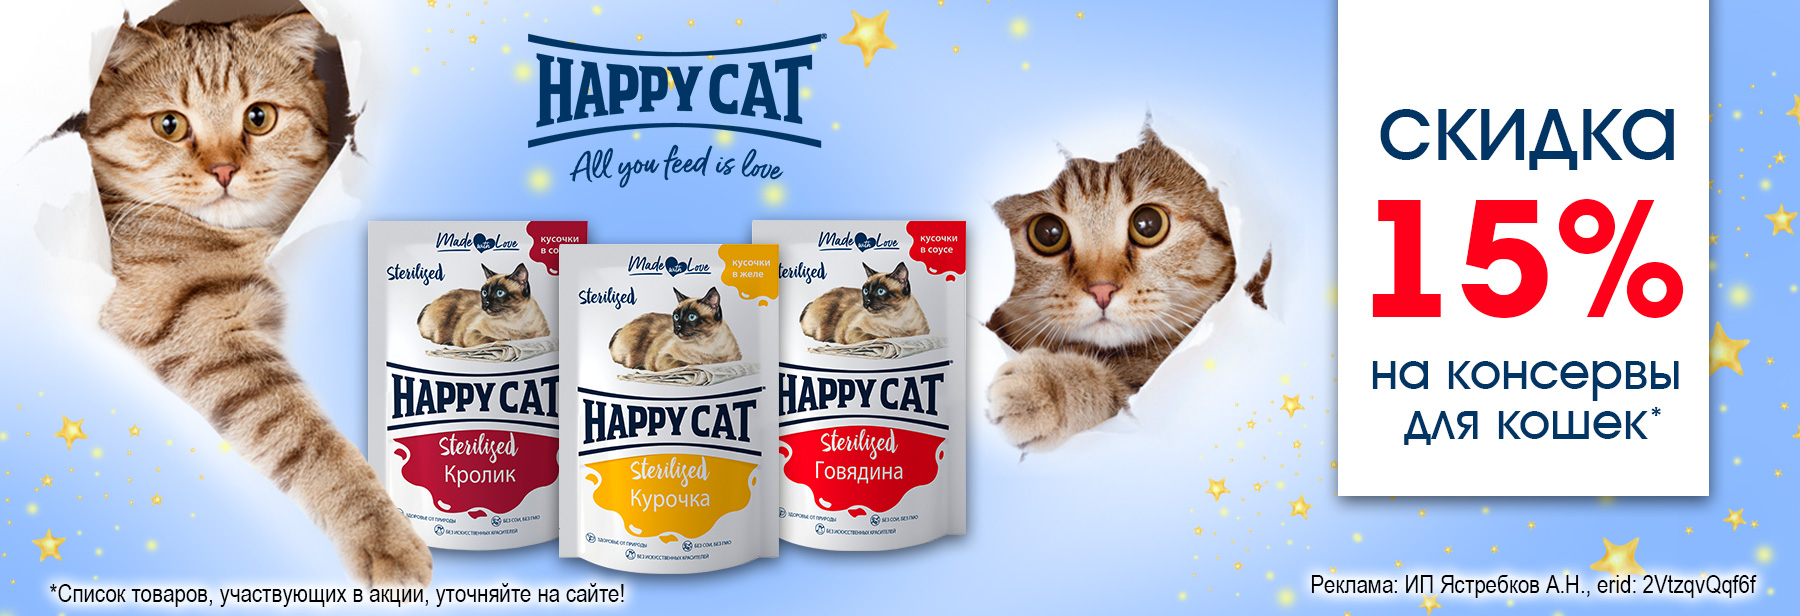 Консервы HAPPY CAT со скидкой 15%!